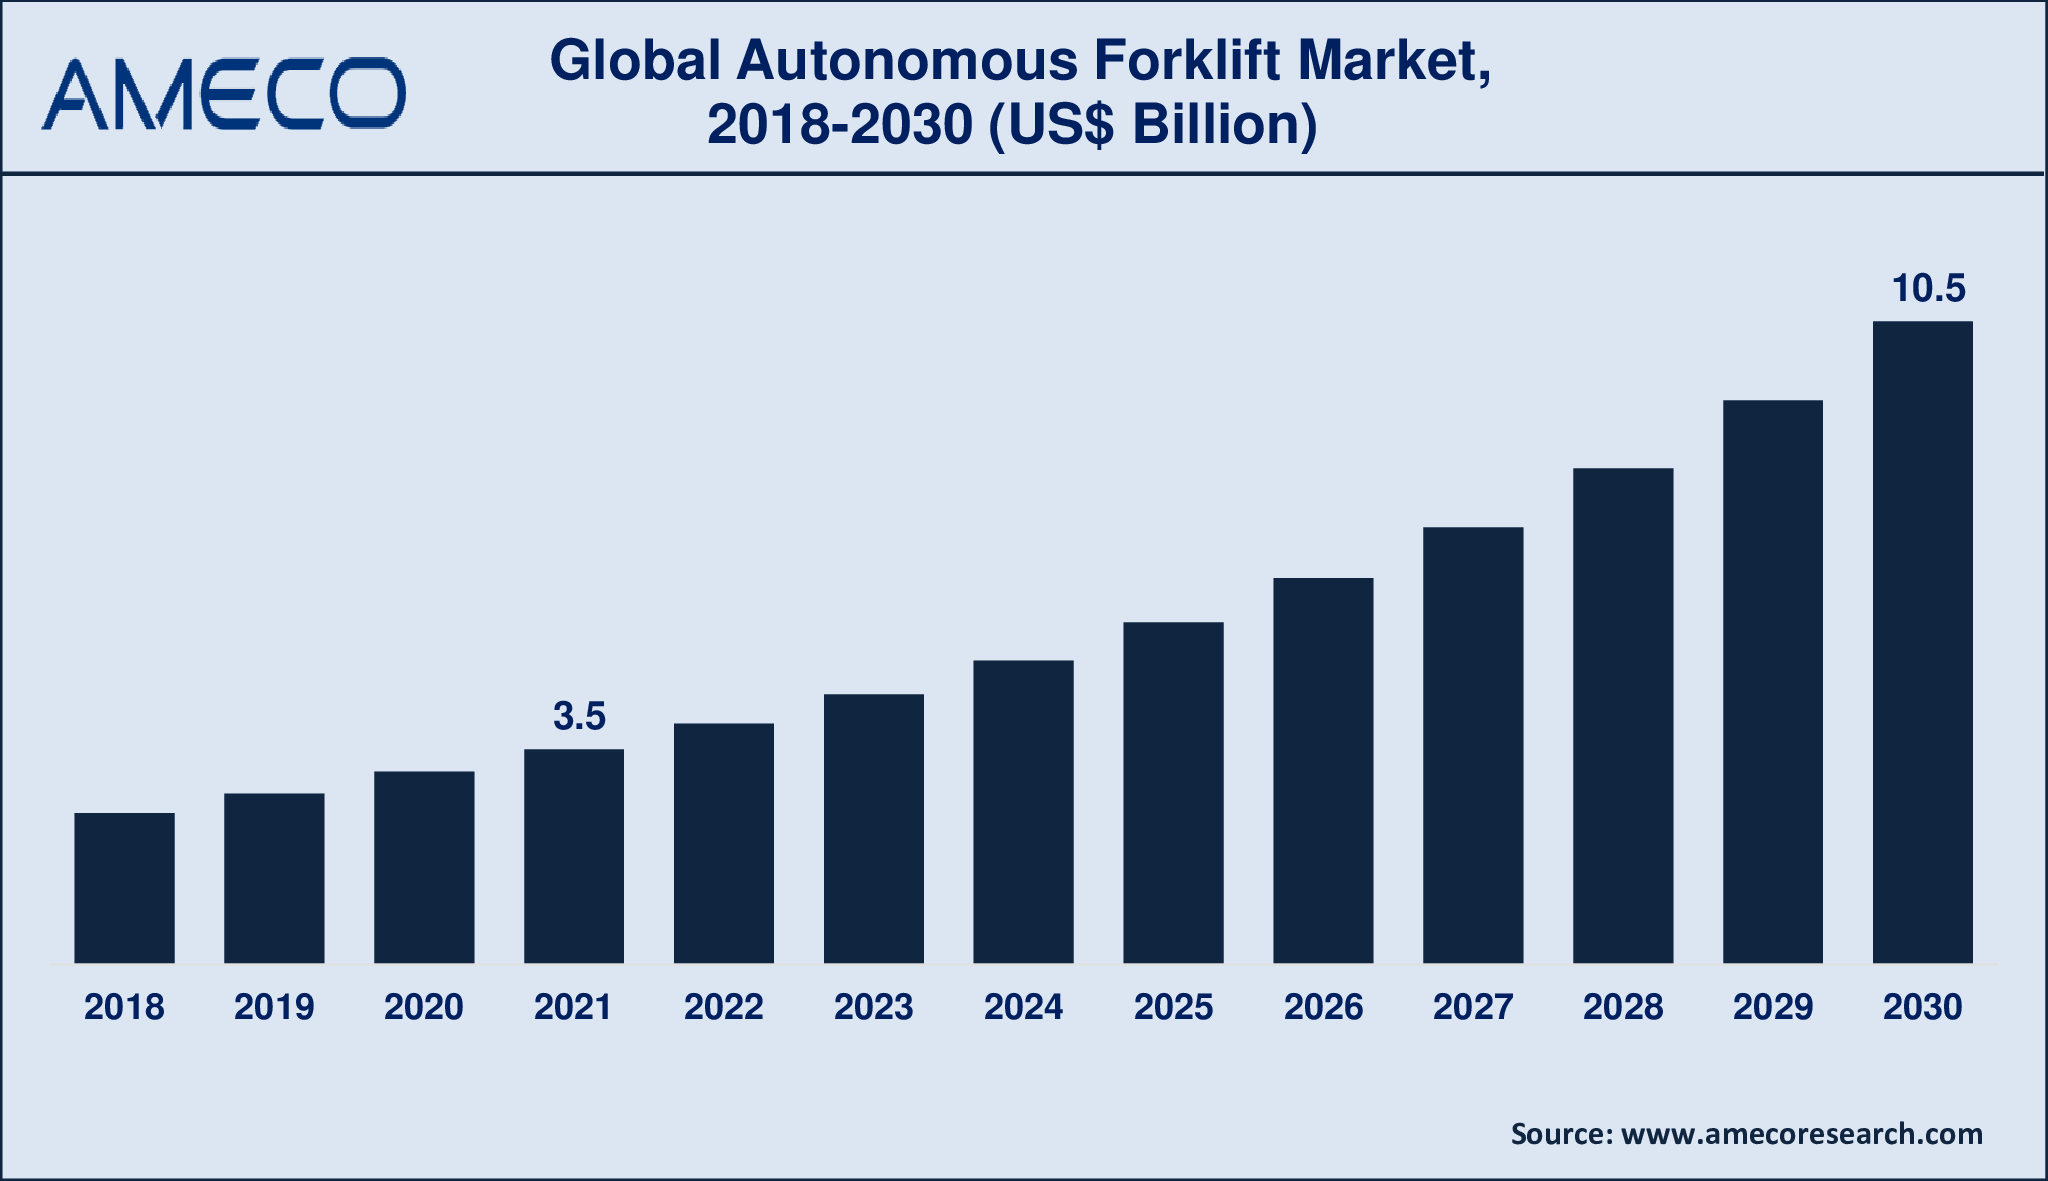 Autonomous Forklift Market Dynamics